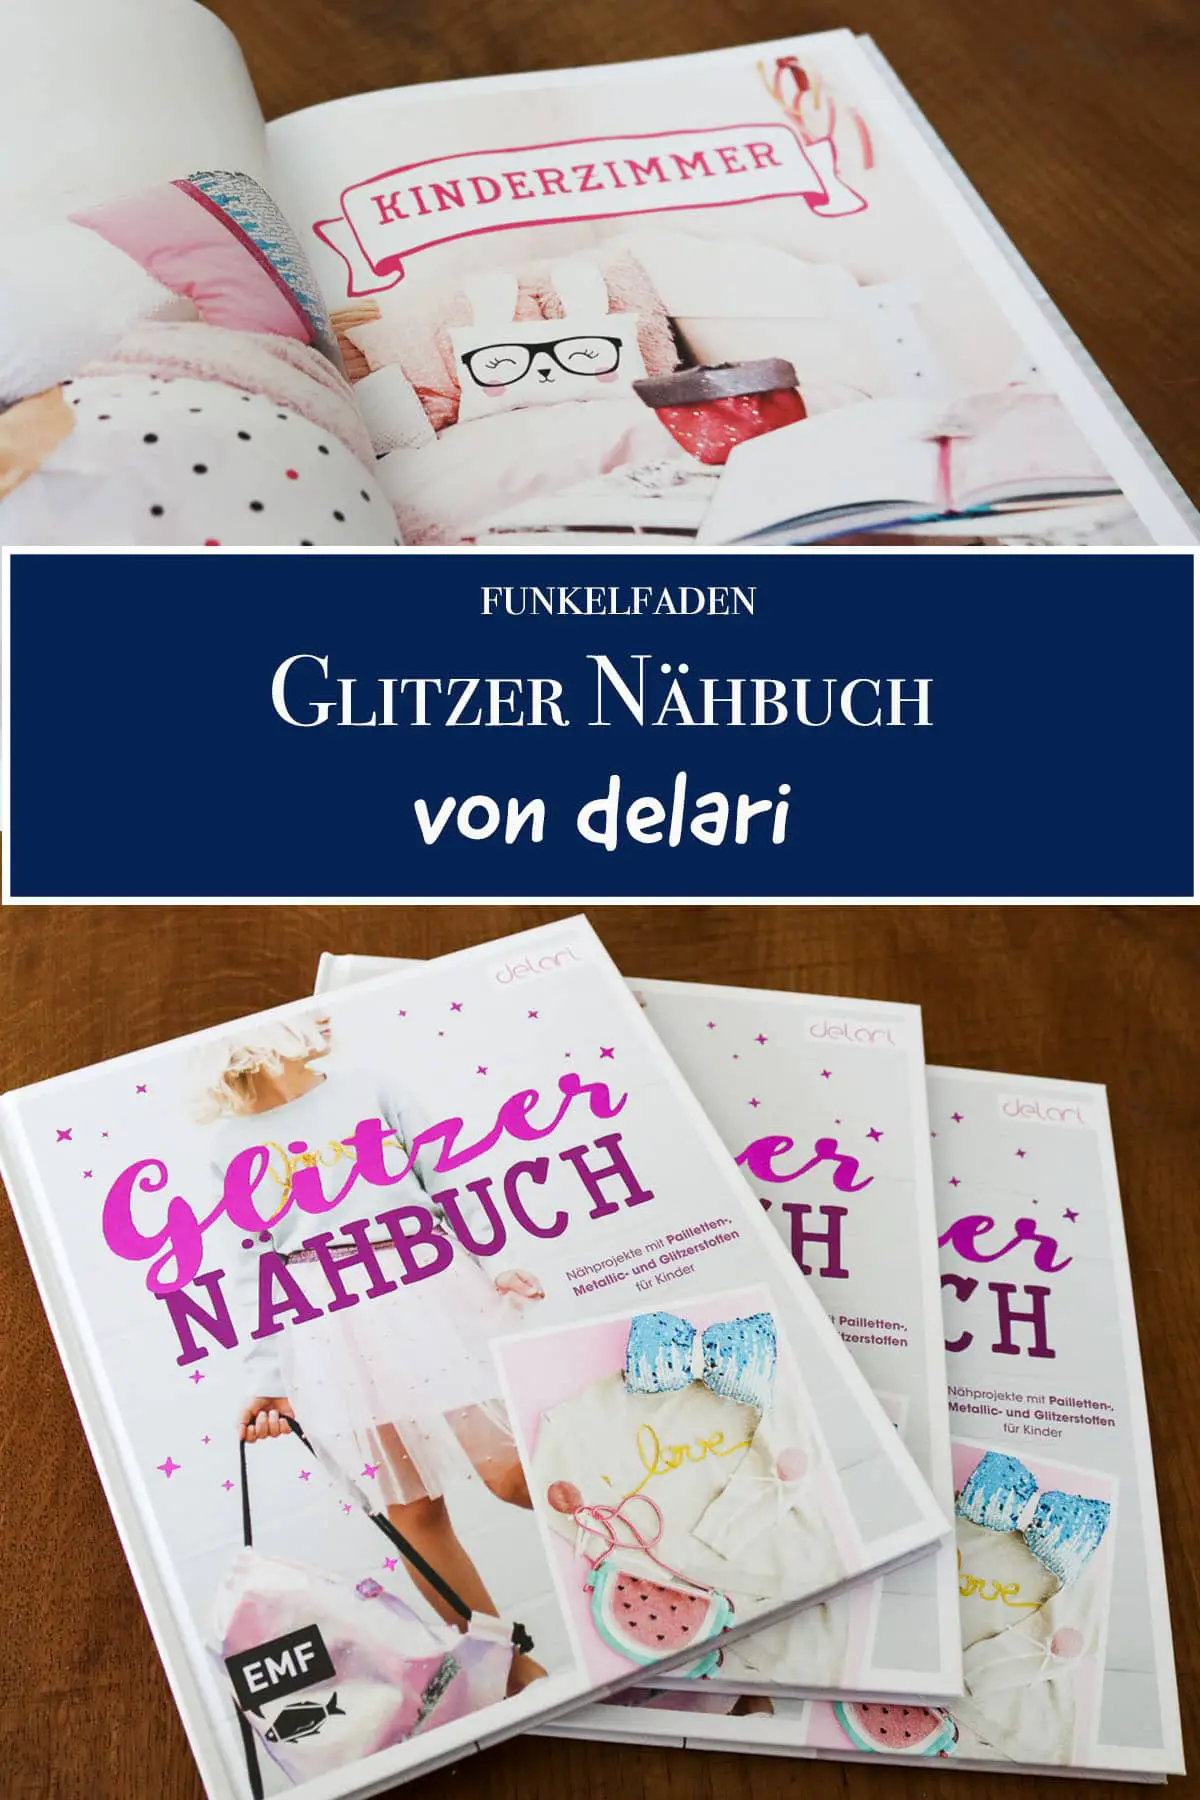 Glitzer-Nähbuch von delari + Verlosung